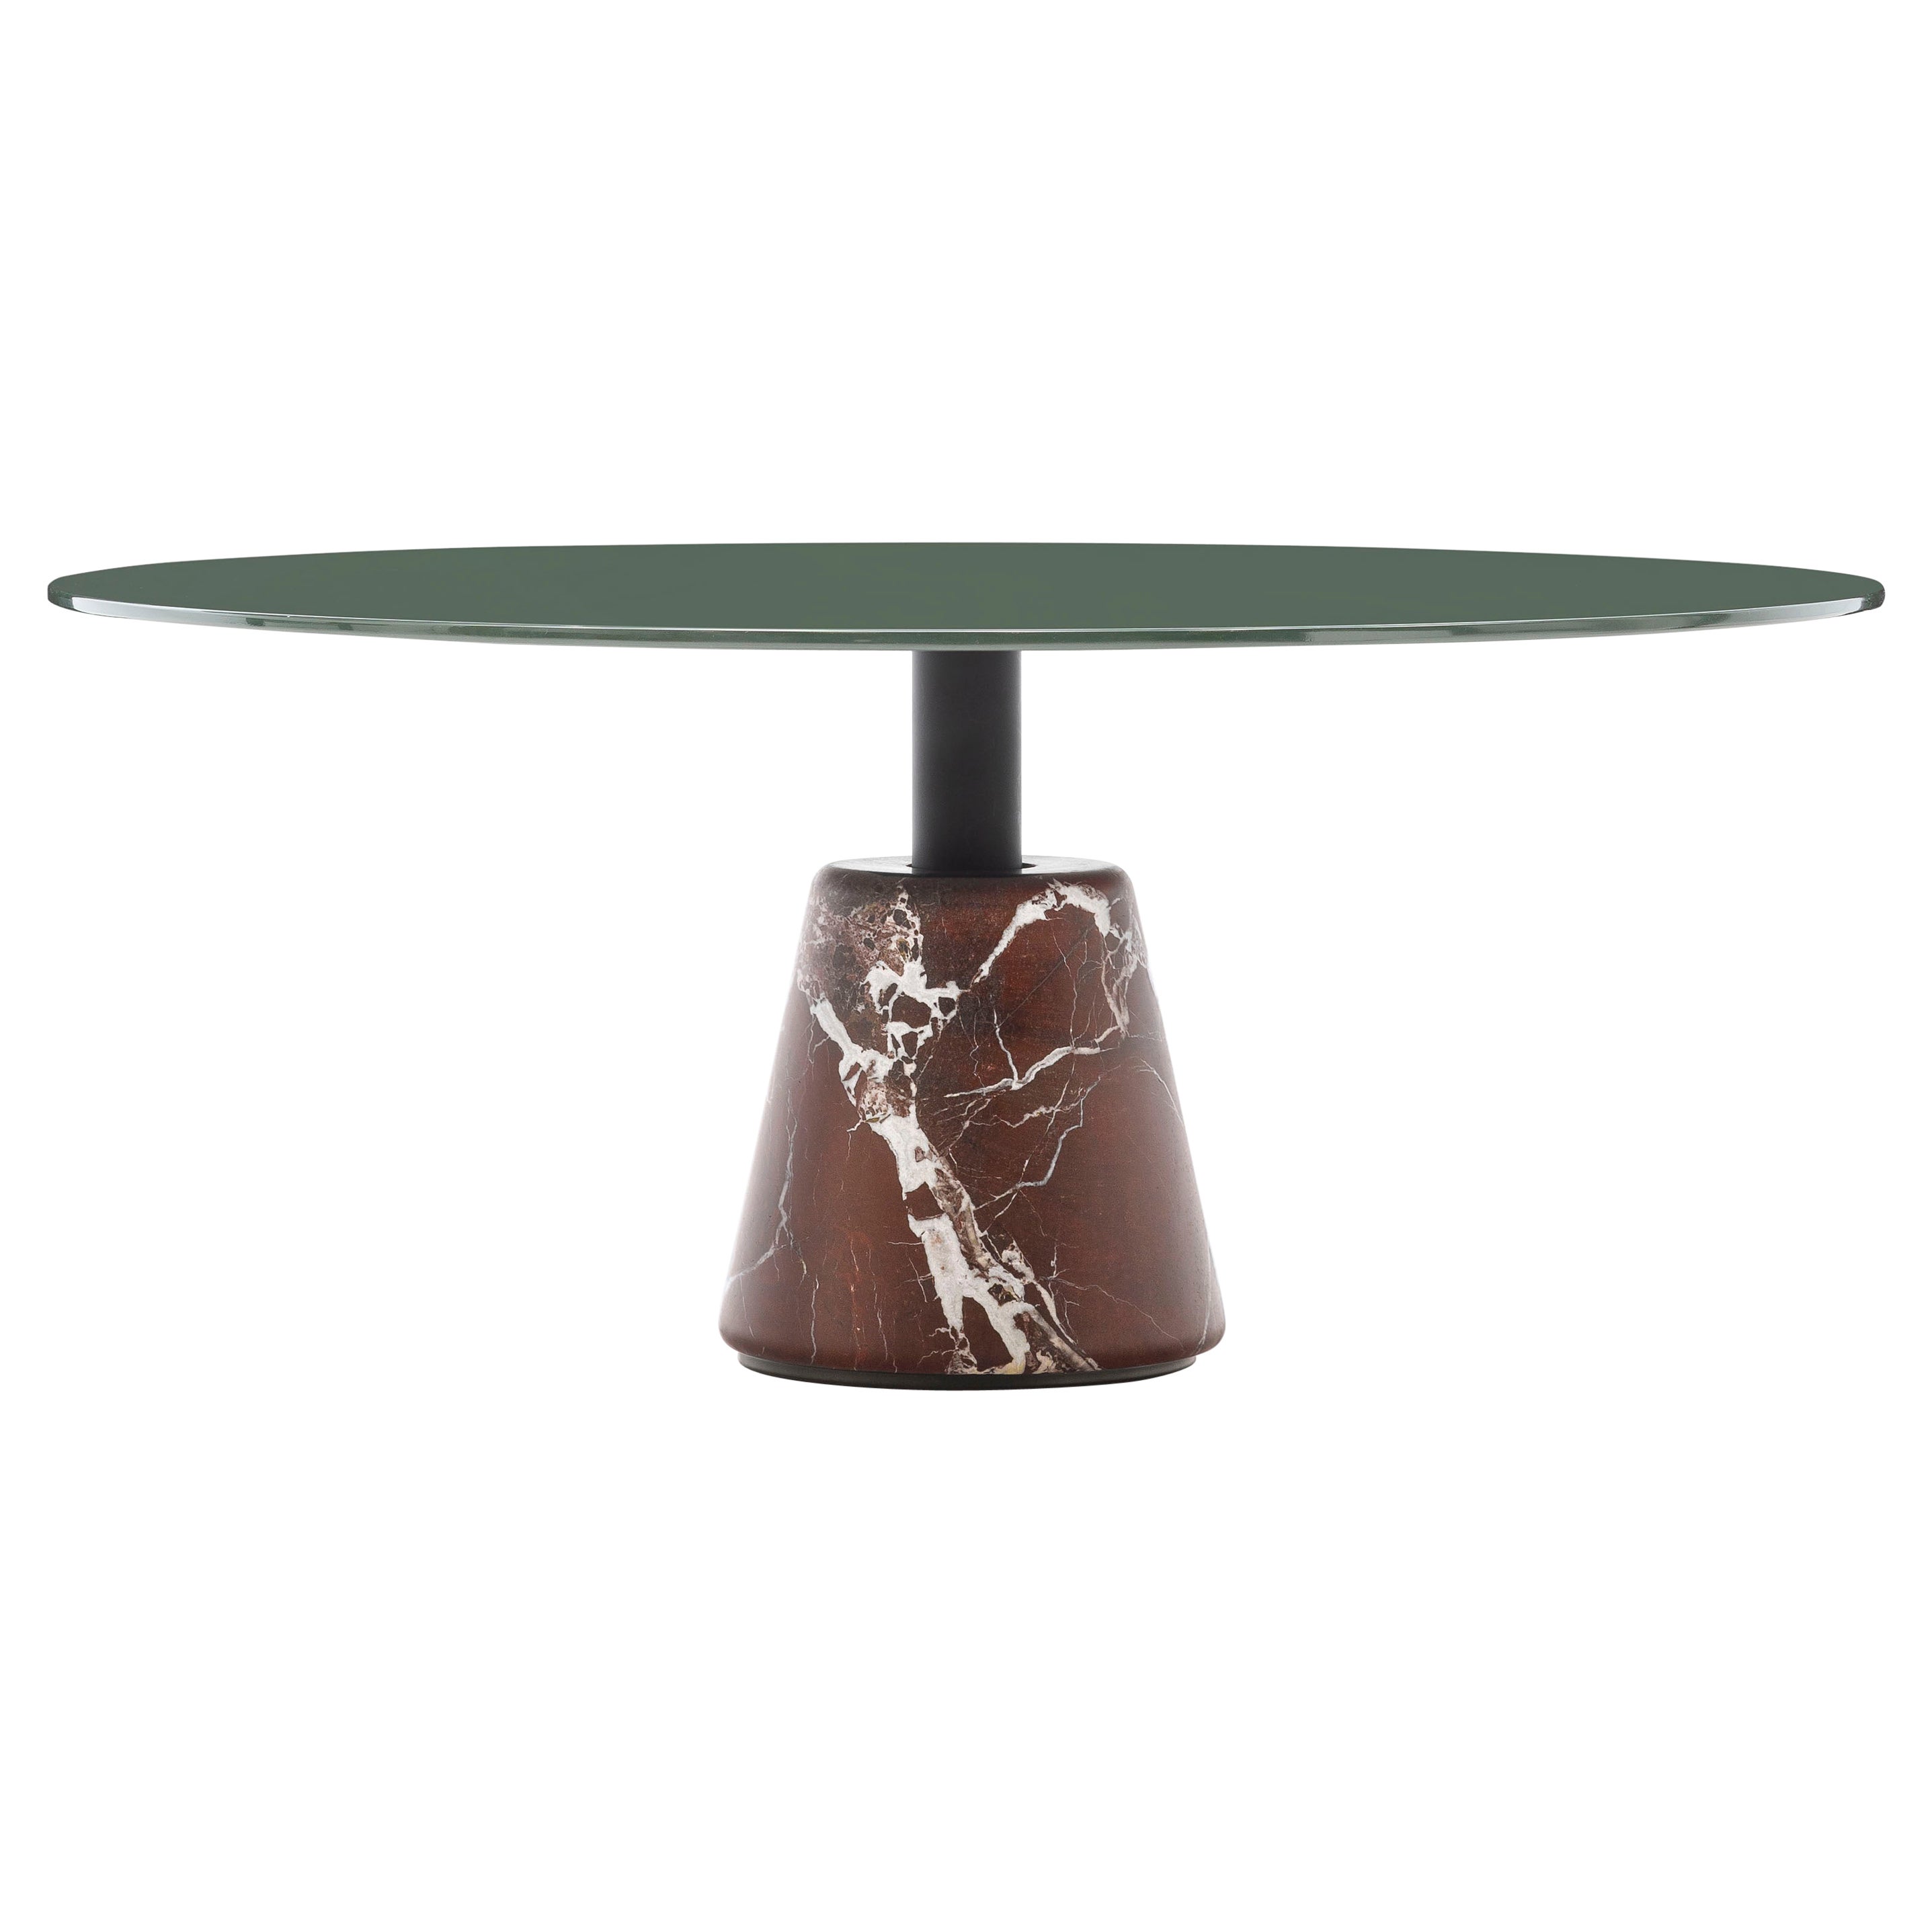 Acerbis - Table basse moyenne en forme de menhir, base en marbre rouge et plateau vert foncé brillant